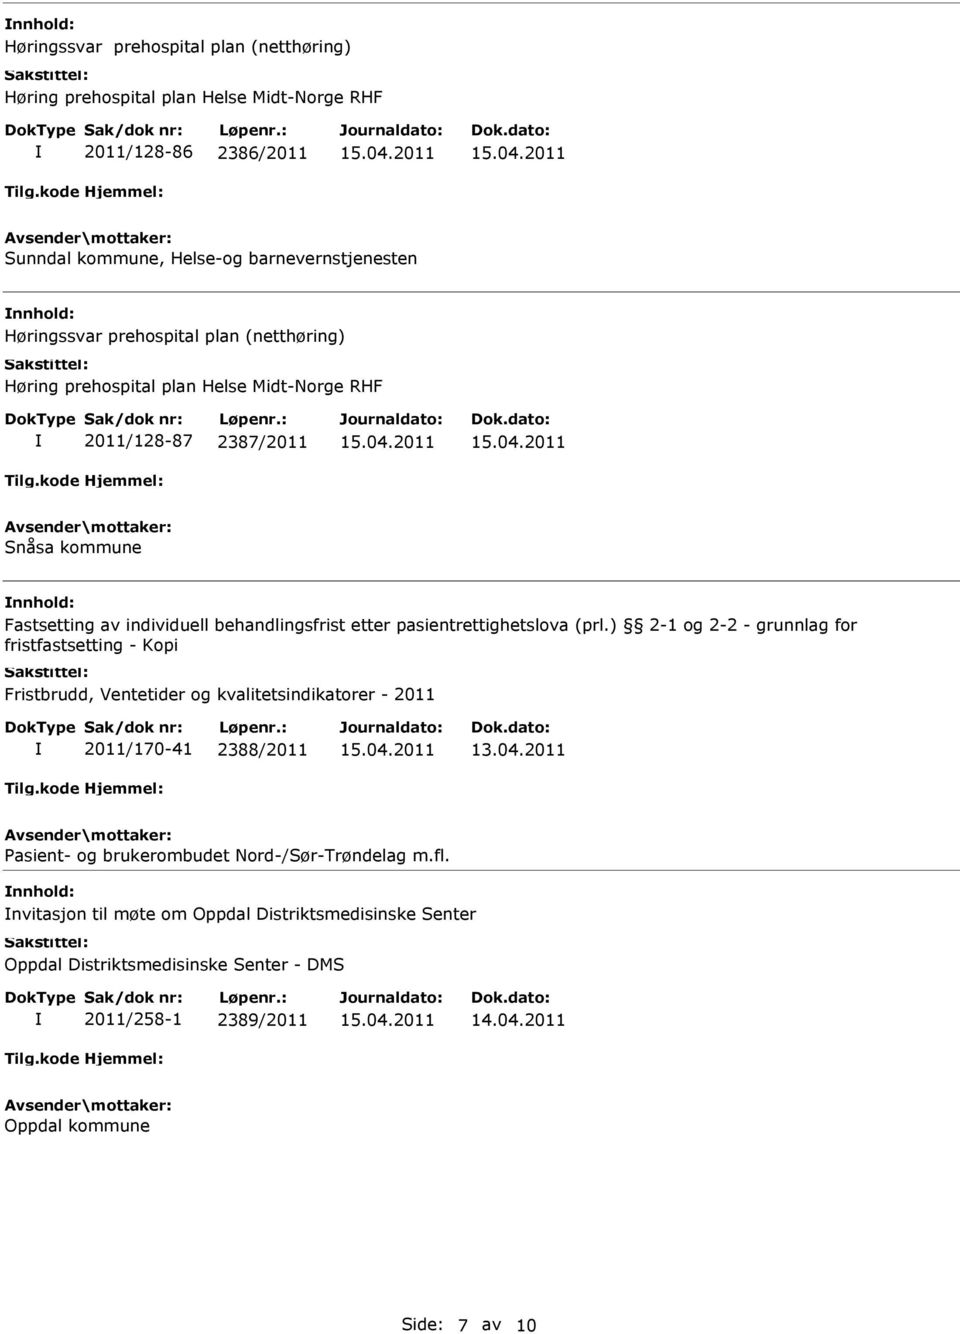 ) 2-1 og 2-2 - grunnlag for fristfastsetting - Kopi Fristbrudd, Ventetider og kvalitetsindikatorer - 2011 2011/170-41 2388/2011